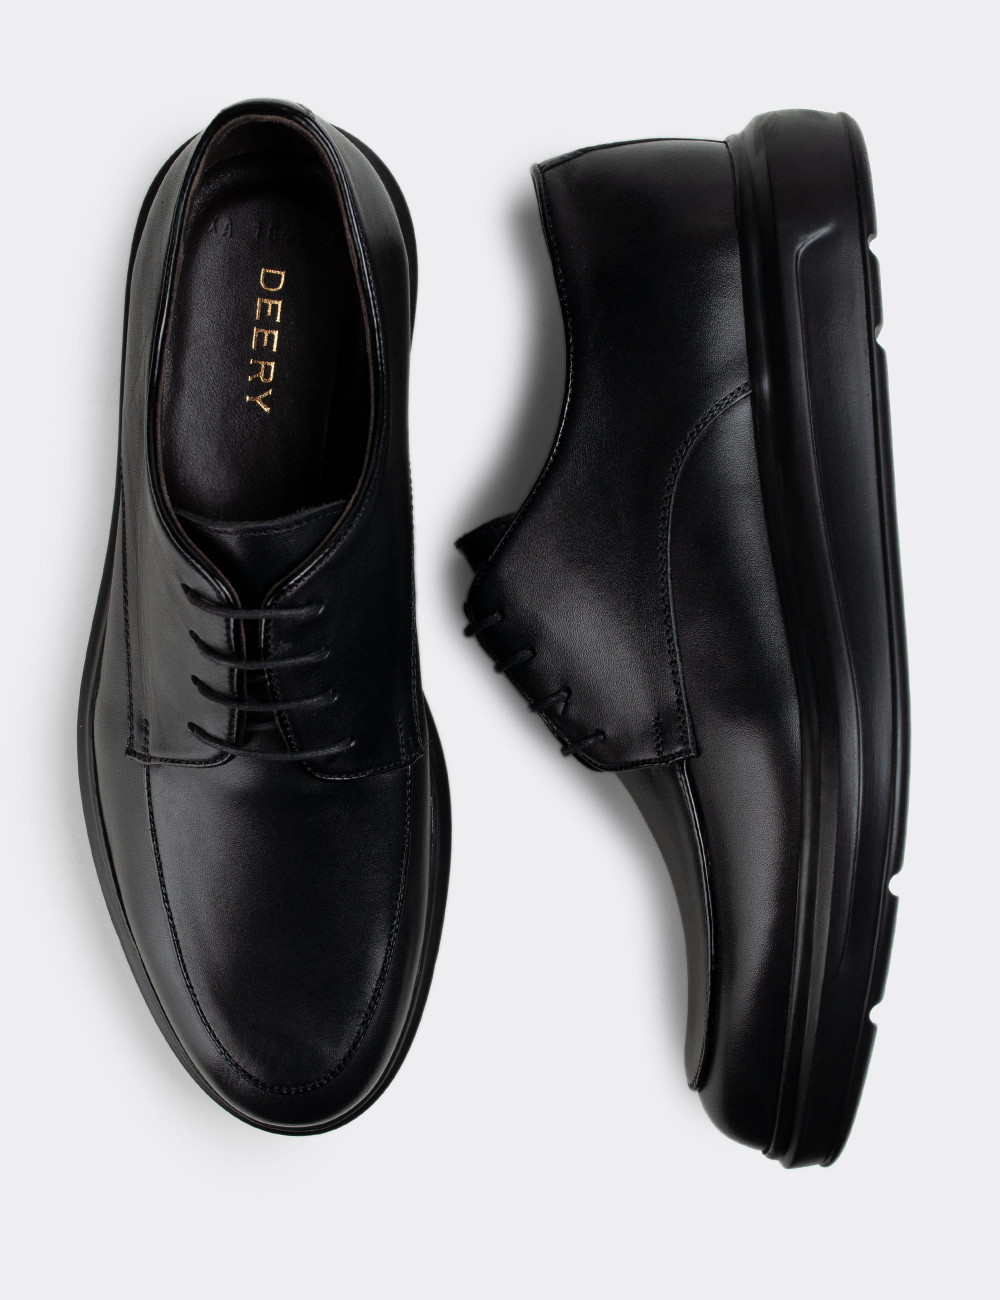 Hakiki Deri Siyah Comfort Günlük Erkek Ayakkabı - 01841MSYHP01